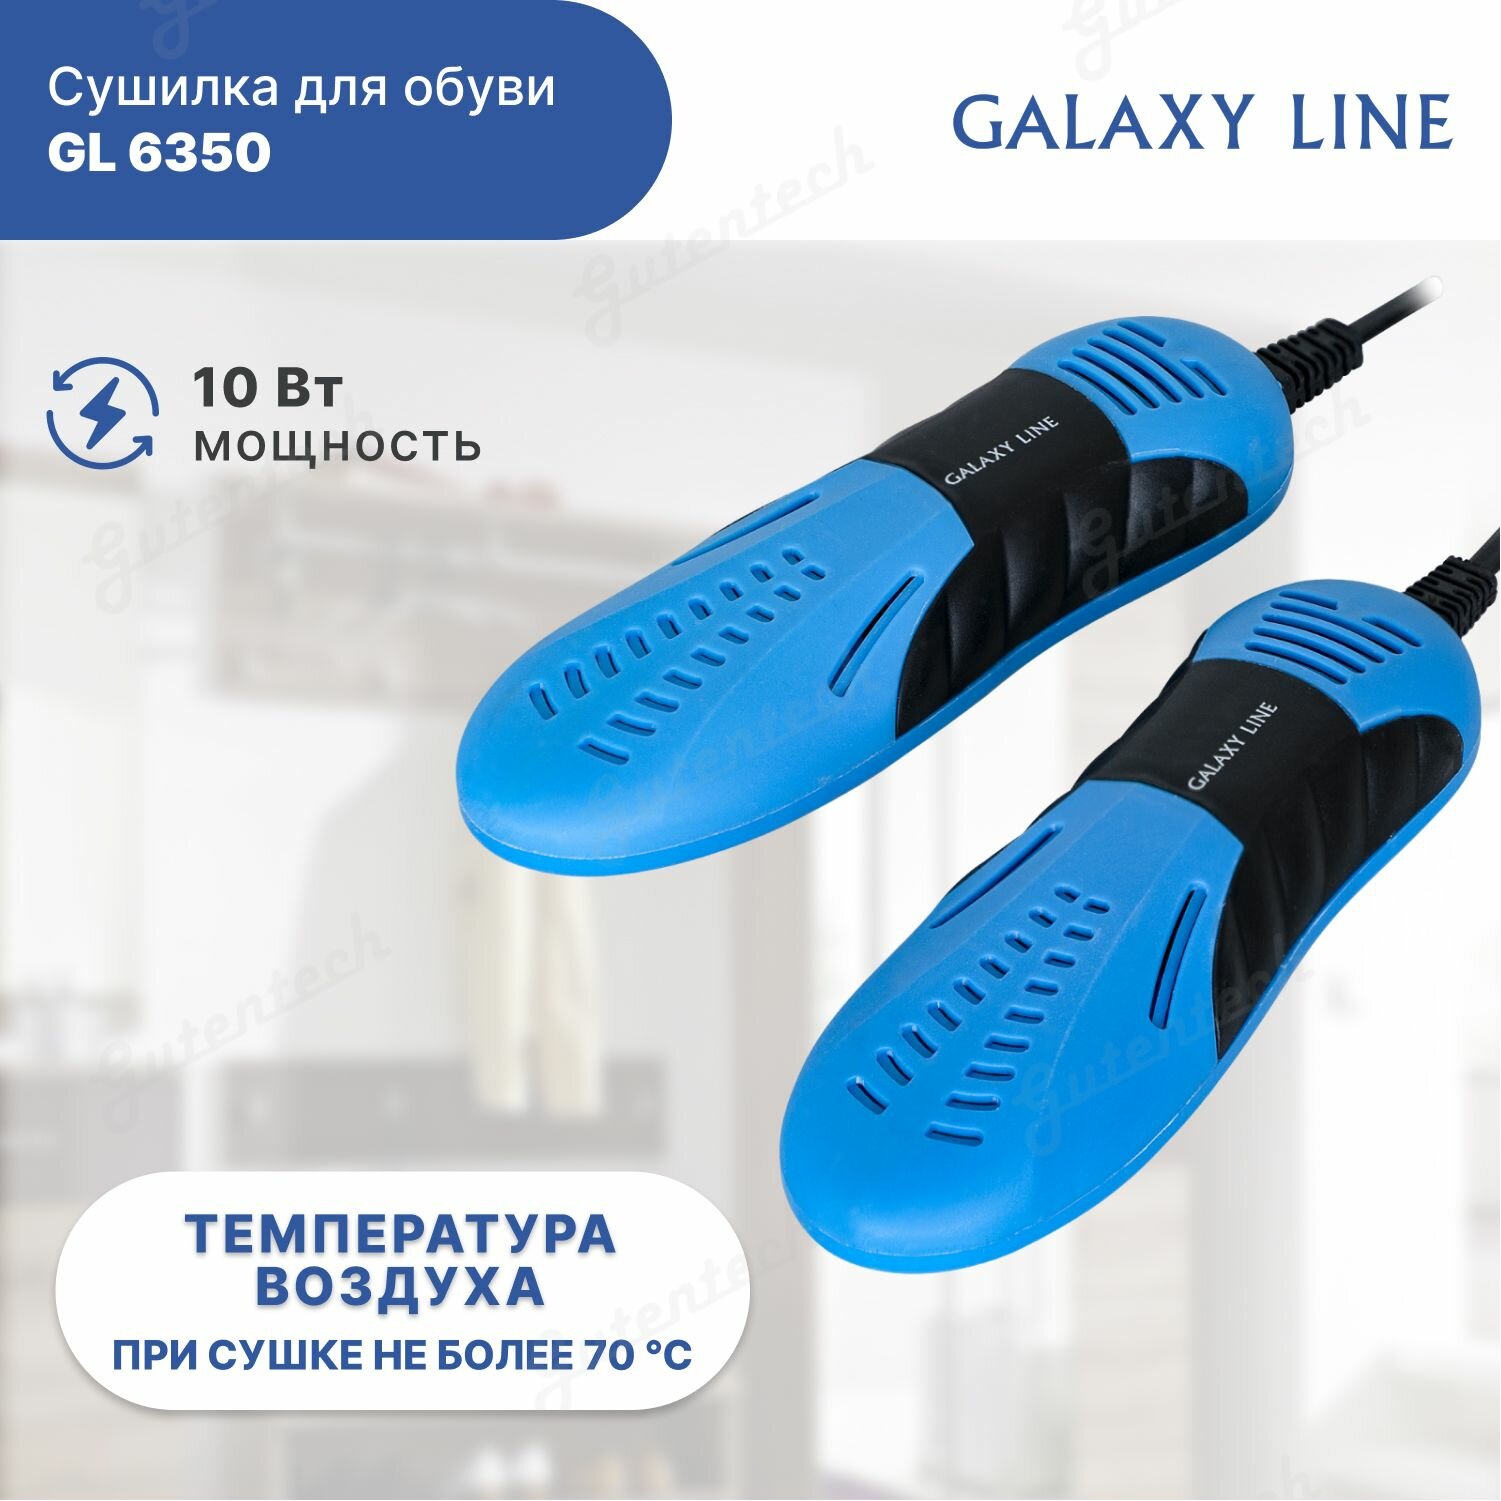 Сушилка для обуви Galaxy LINE GL 6350 синяя